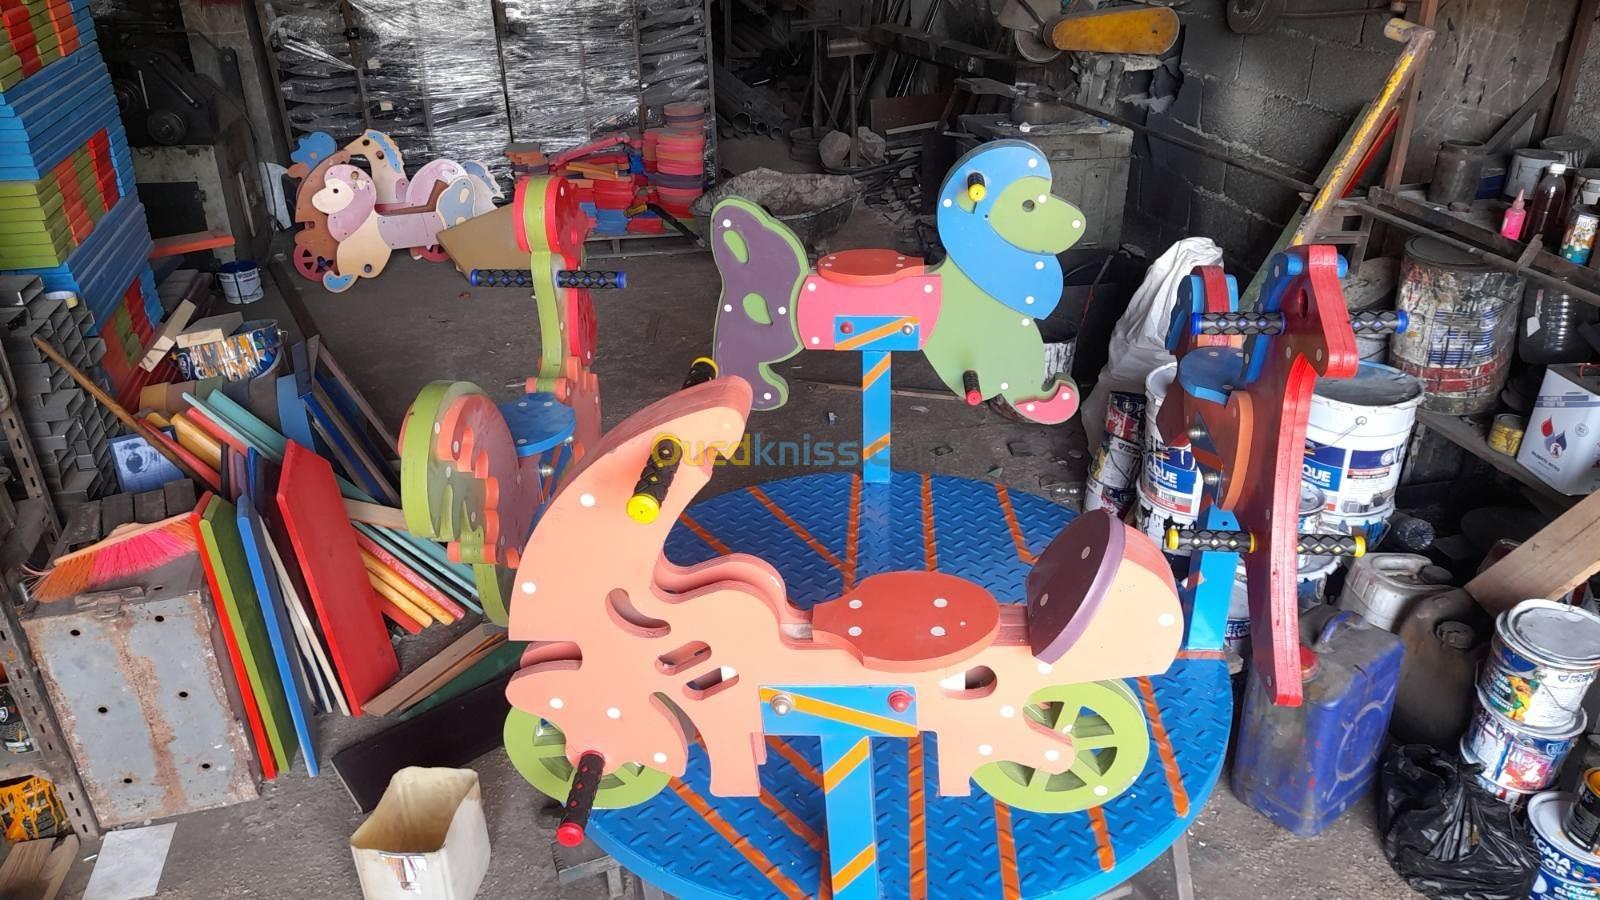 Toboggan bascule espace de jeux pour enfants balançoire gazon synthétique